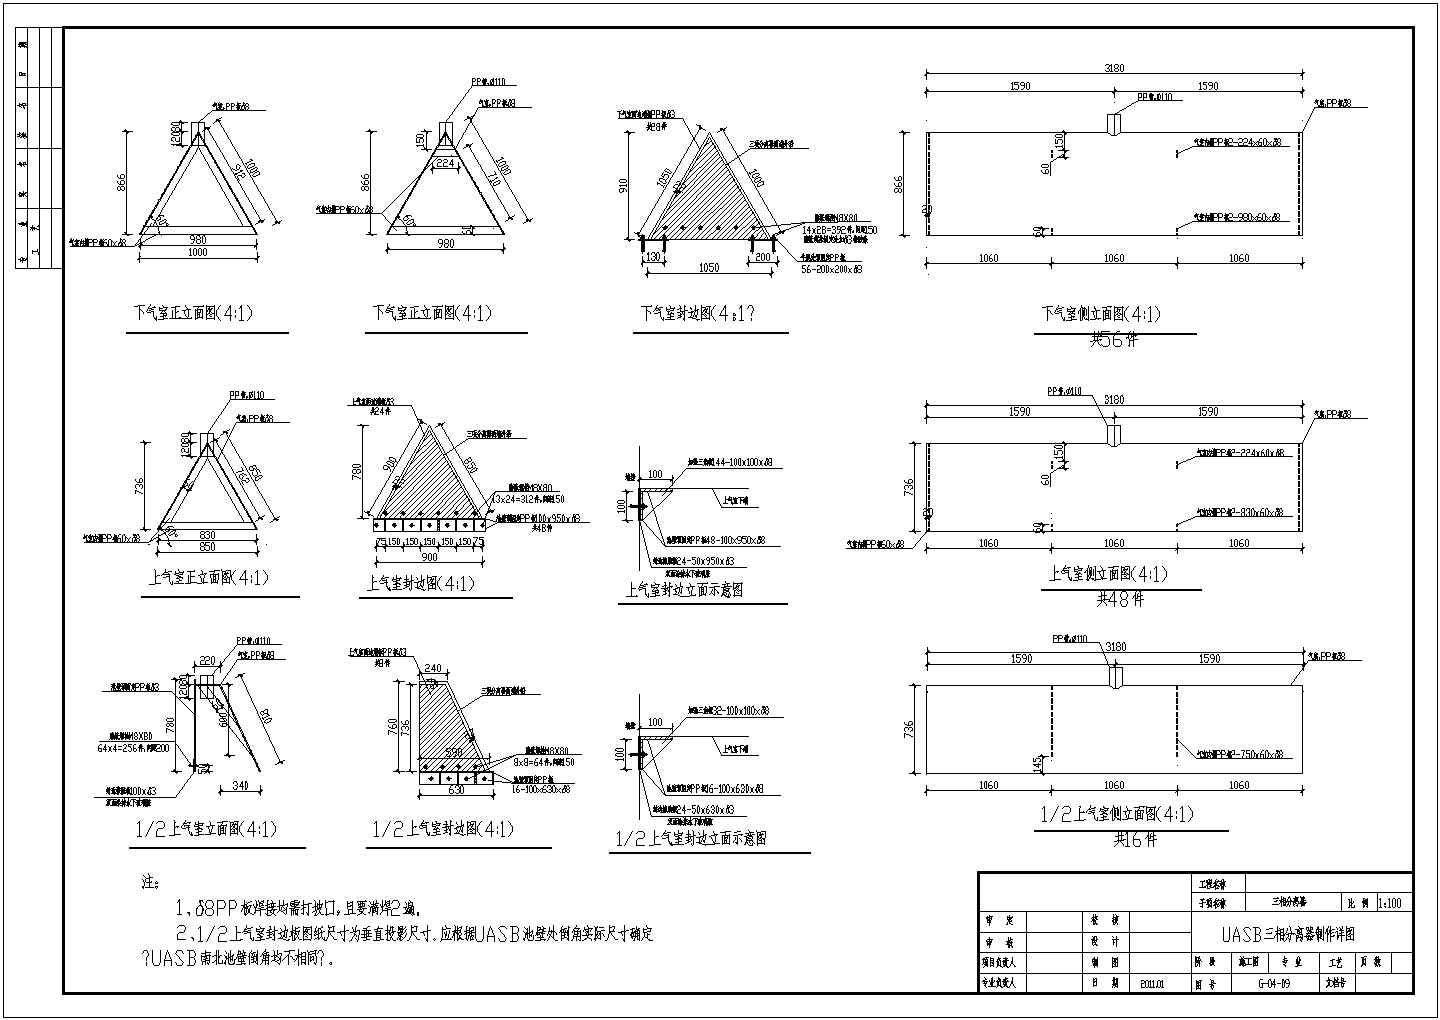 UASB单体工艺设计图纸（含三相分离器详图等）